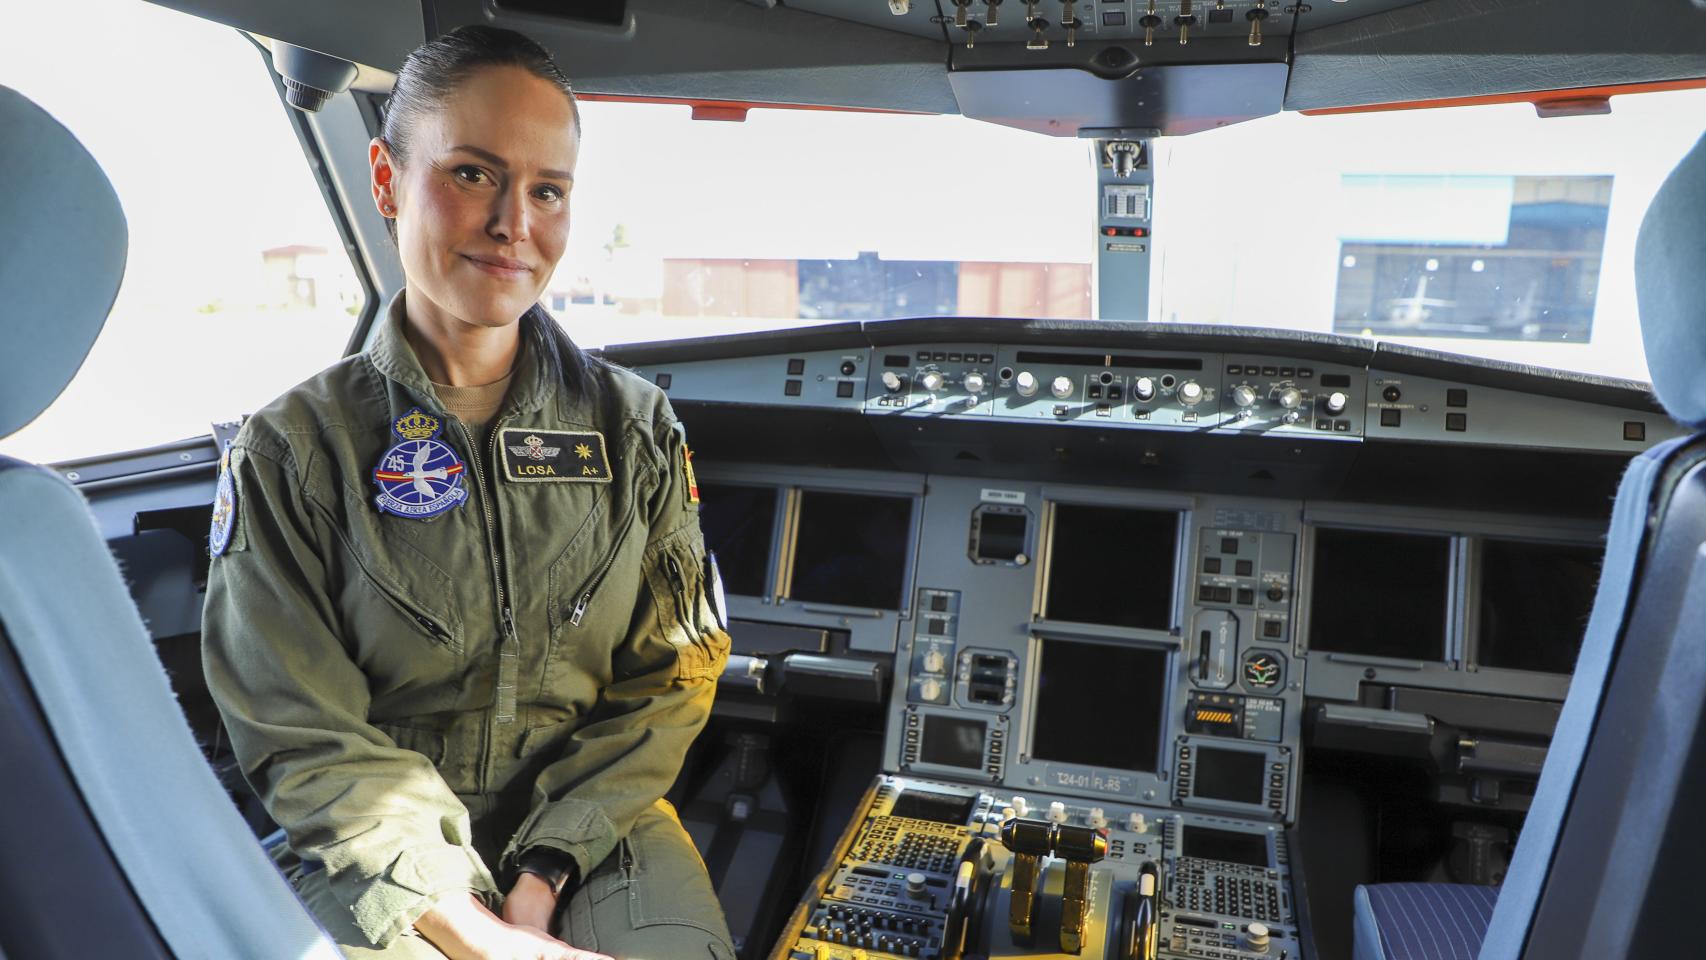 La comandante Lourdes Losa en el interior de su aeronave militar.